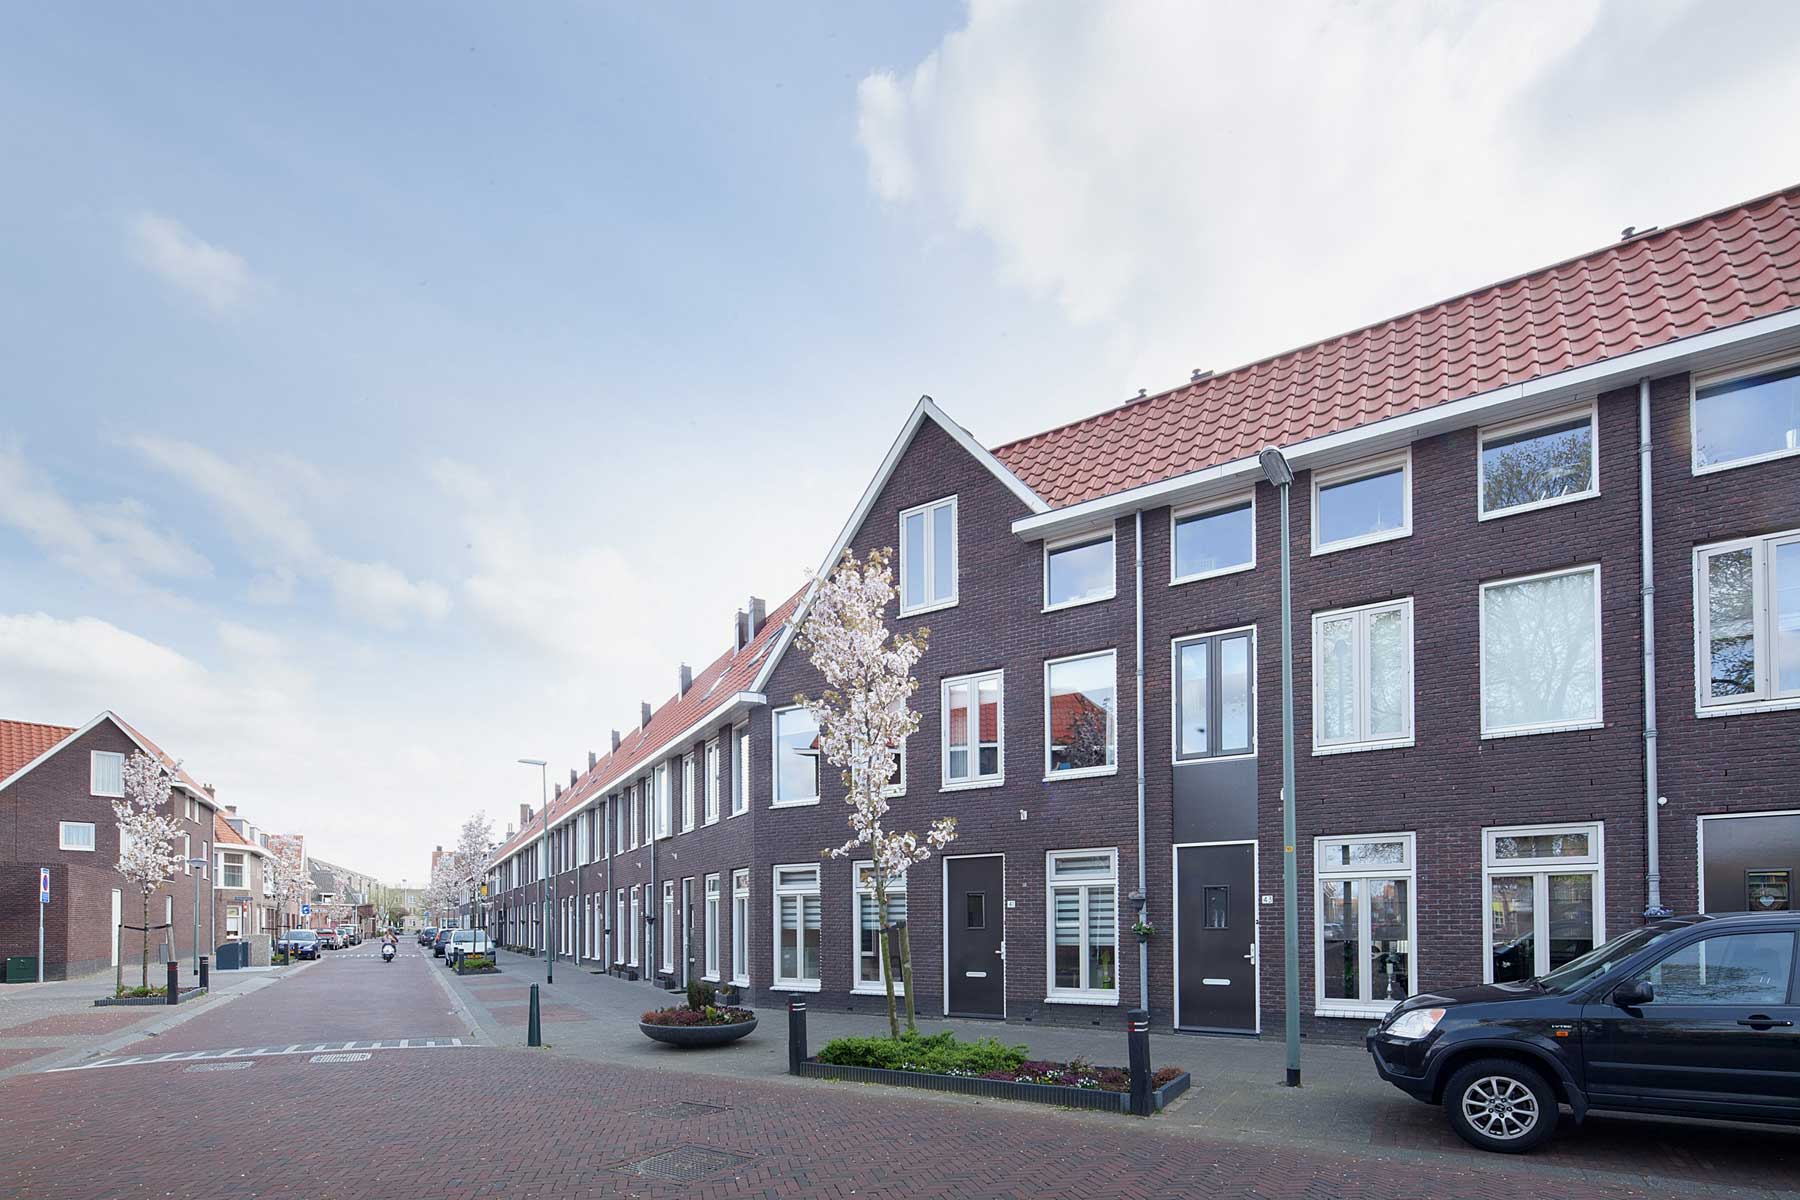 hparchitecten-jarendertigwoonwijk-exlibris_05